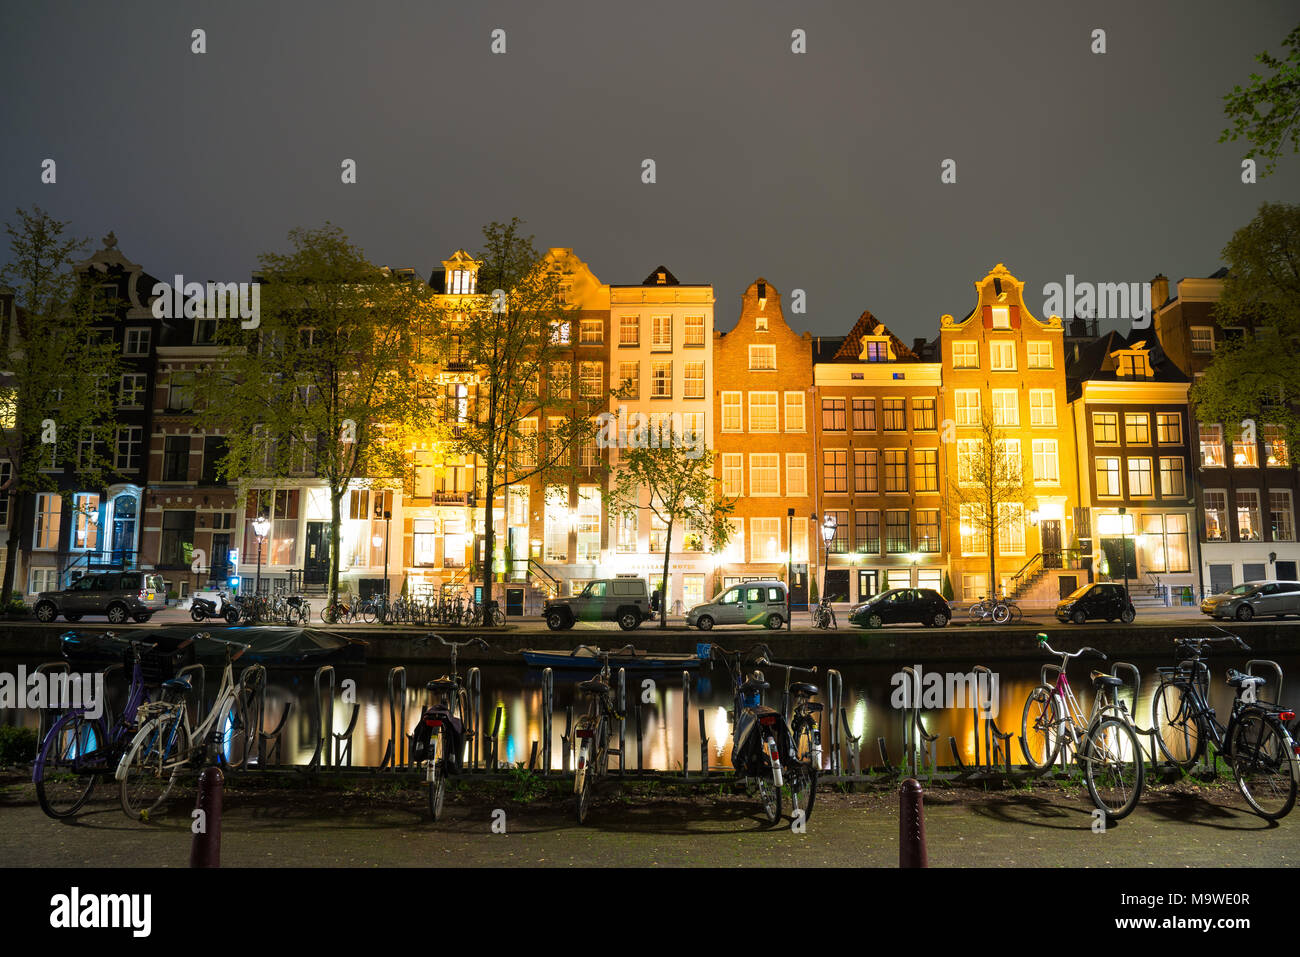 Vista notturna del paesaggio urbano di Amsterdam con canal, il ponte e le case medioevali nel crepuscolo della sera illuminata. Amsterdam, Paesi Bassi Foto Stock